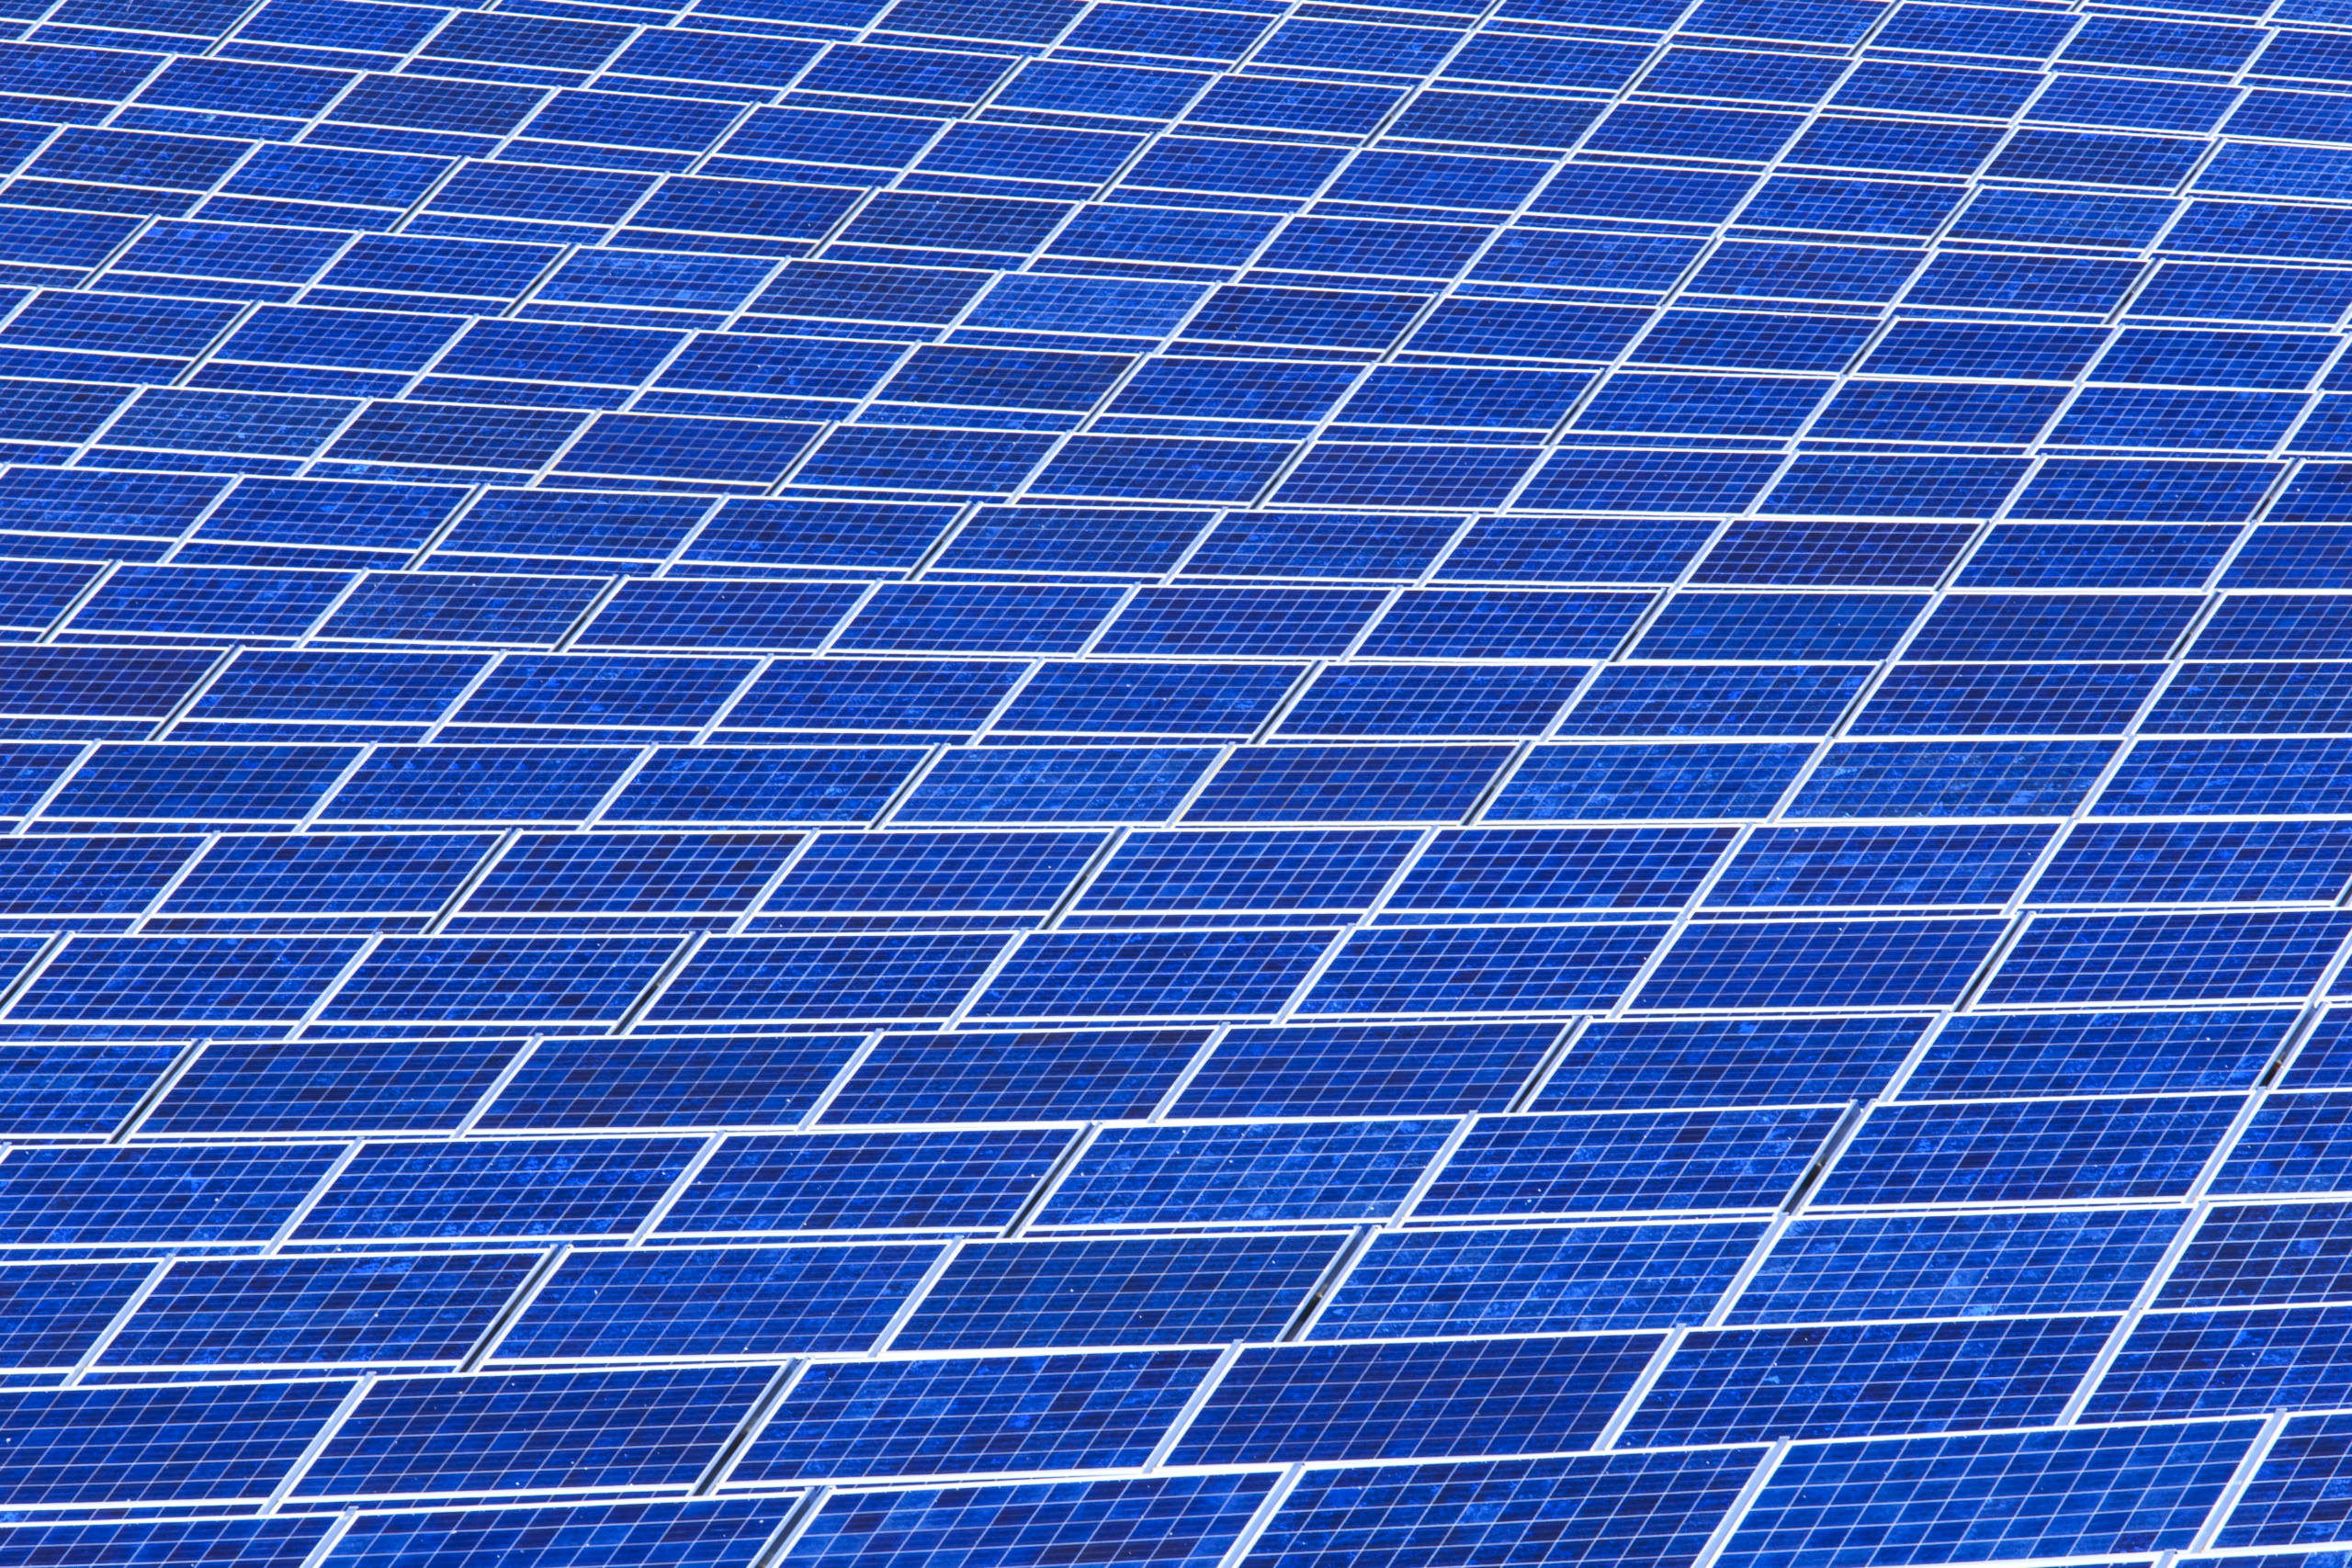 Réduire la pauvreté énergétique en Italie grâce au marché du solaire photovoltaïque